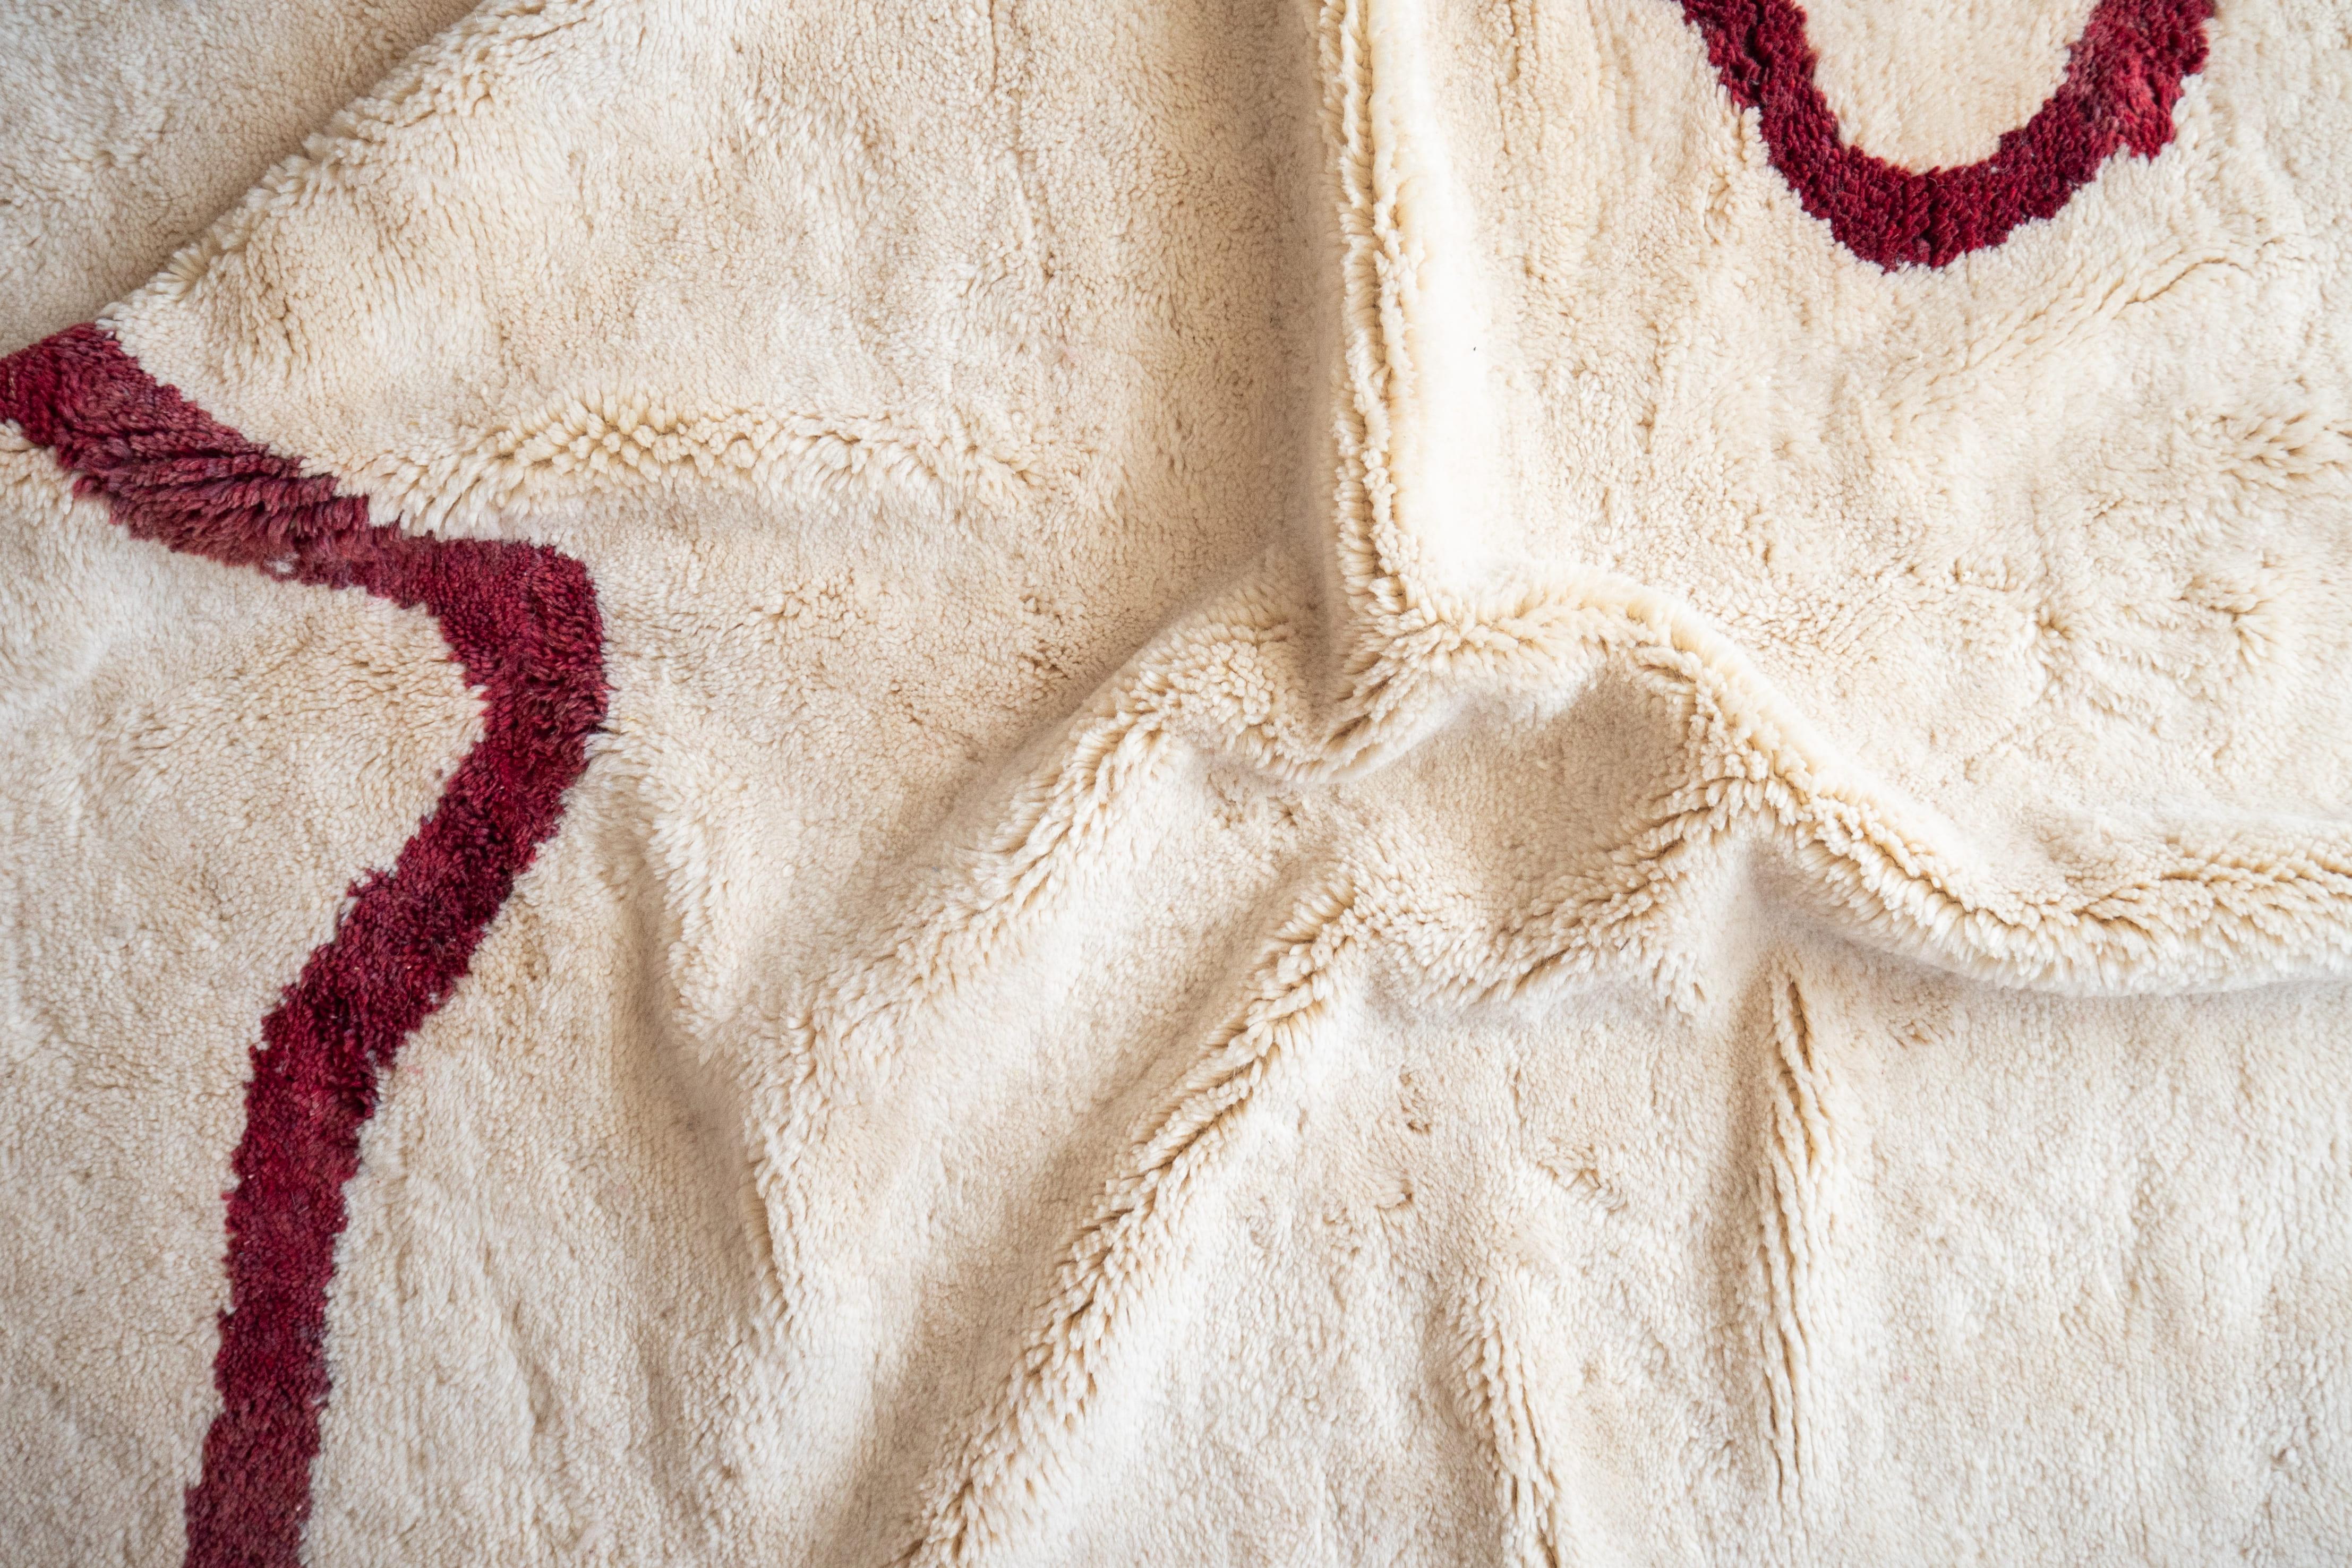 Taille : 195x221 cm en stock. A votre demande, nous pouvons réaliser ce tapis dans toutes les dimensions souhaitées.

Les tapis Beni Mrirt sont faits à 100 % de laine de mouton douce et tendre de la plus haute qualité, qui est soigneusement